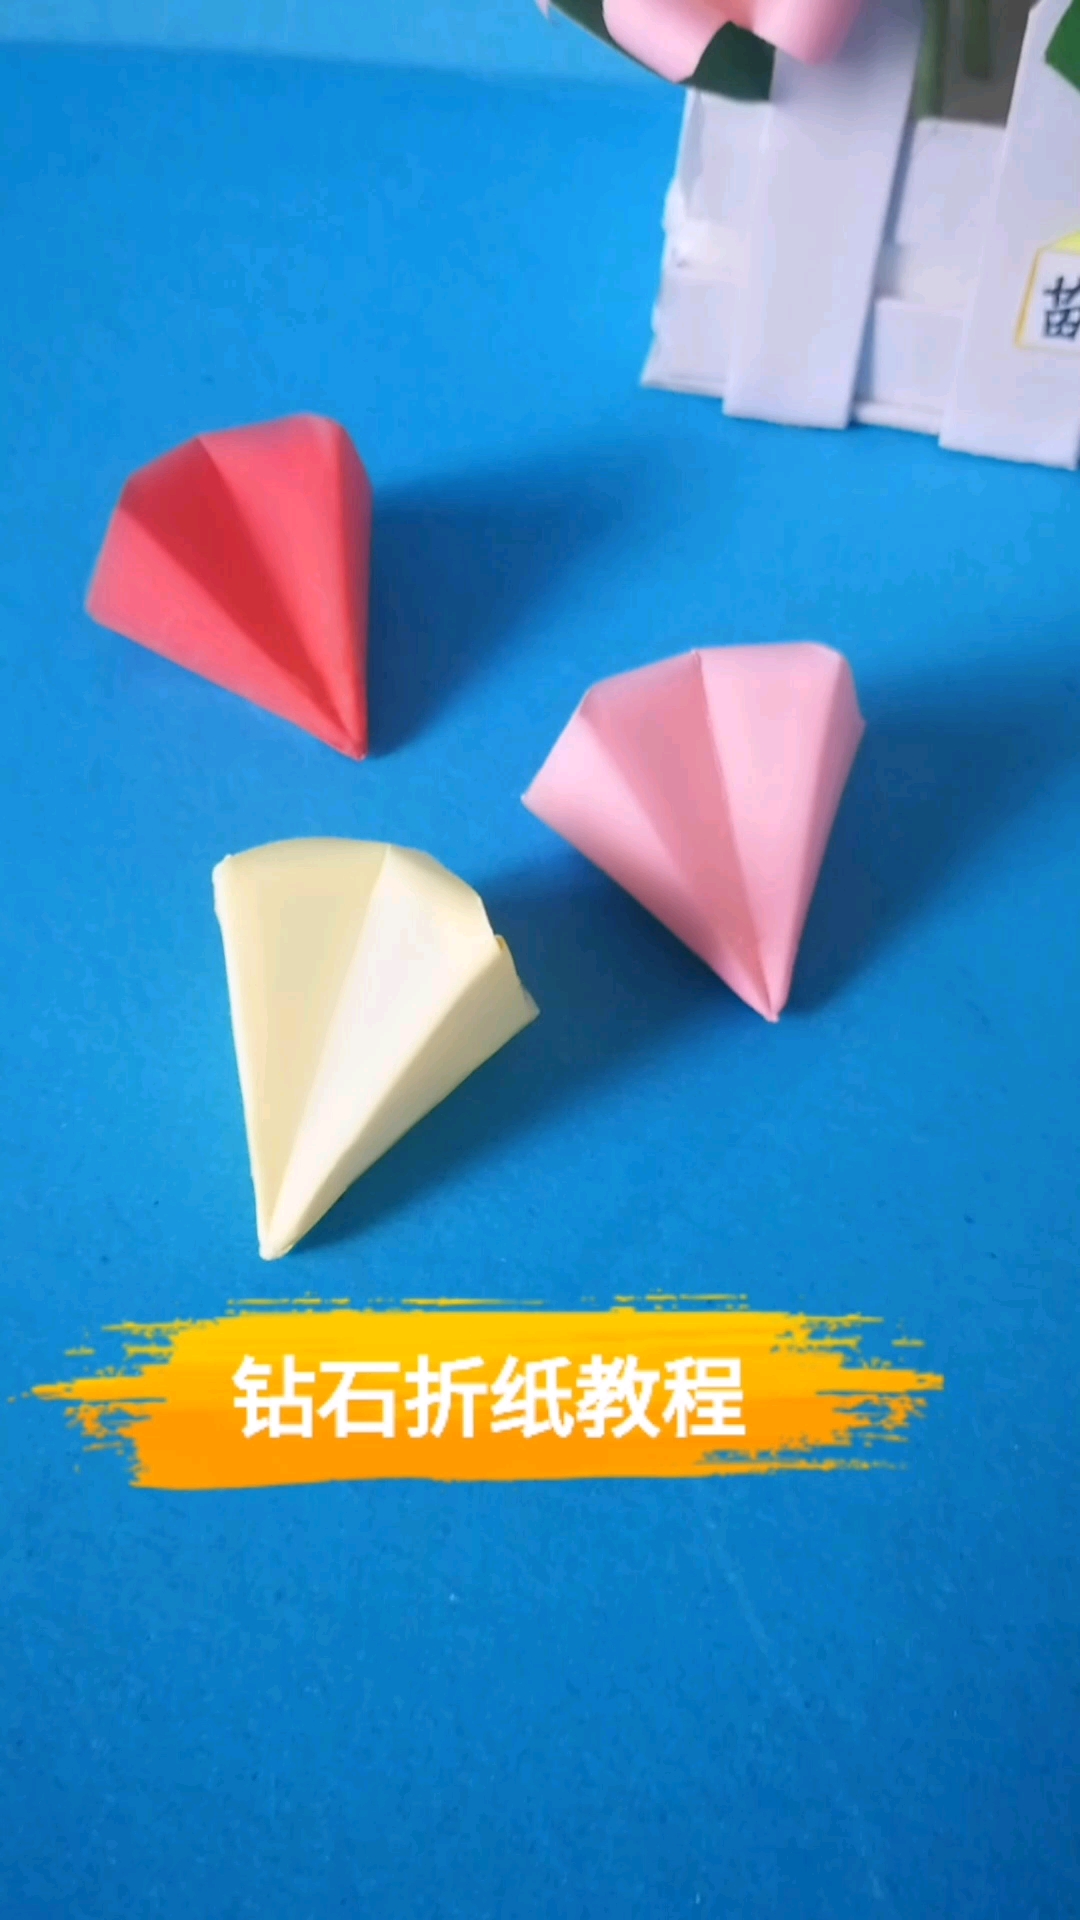 简单版的钻石折纸教程幼儿手工折纸教程还不会的快收藏起来了